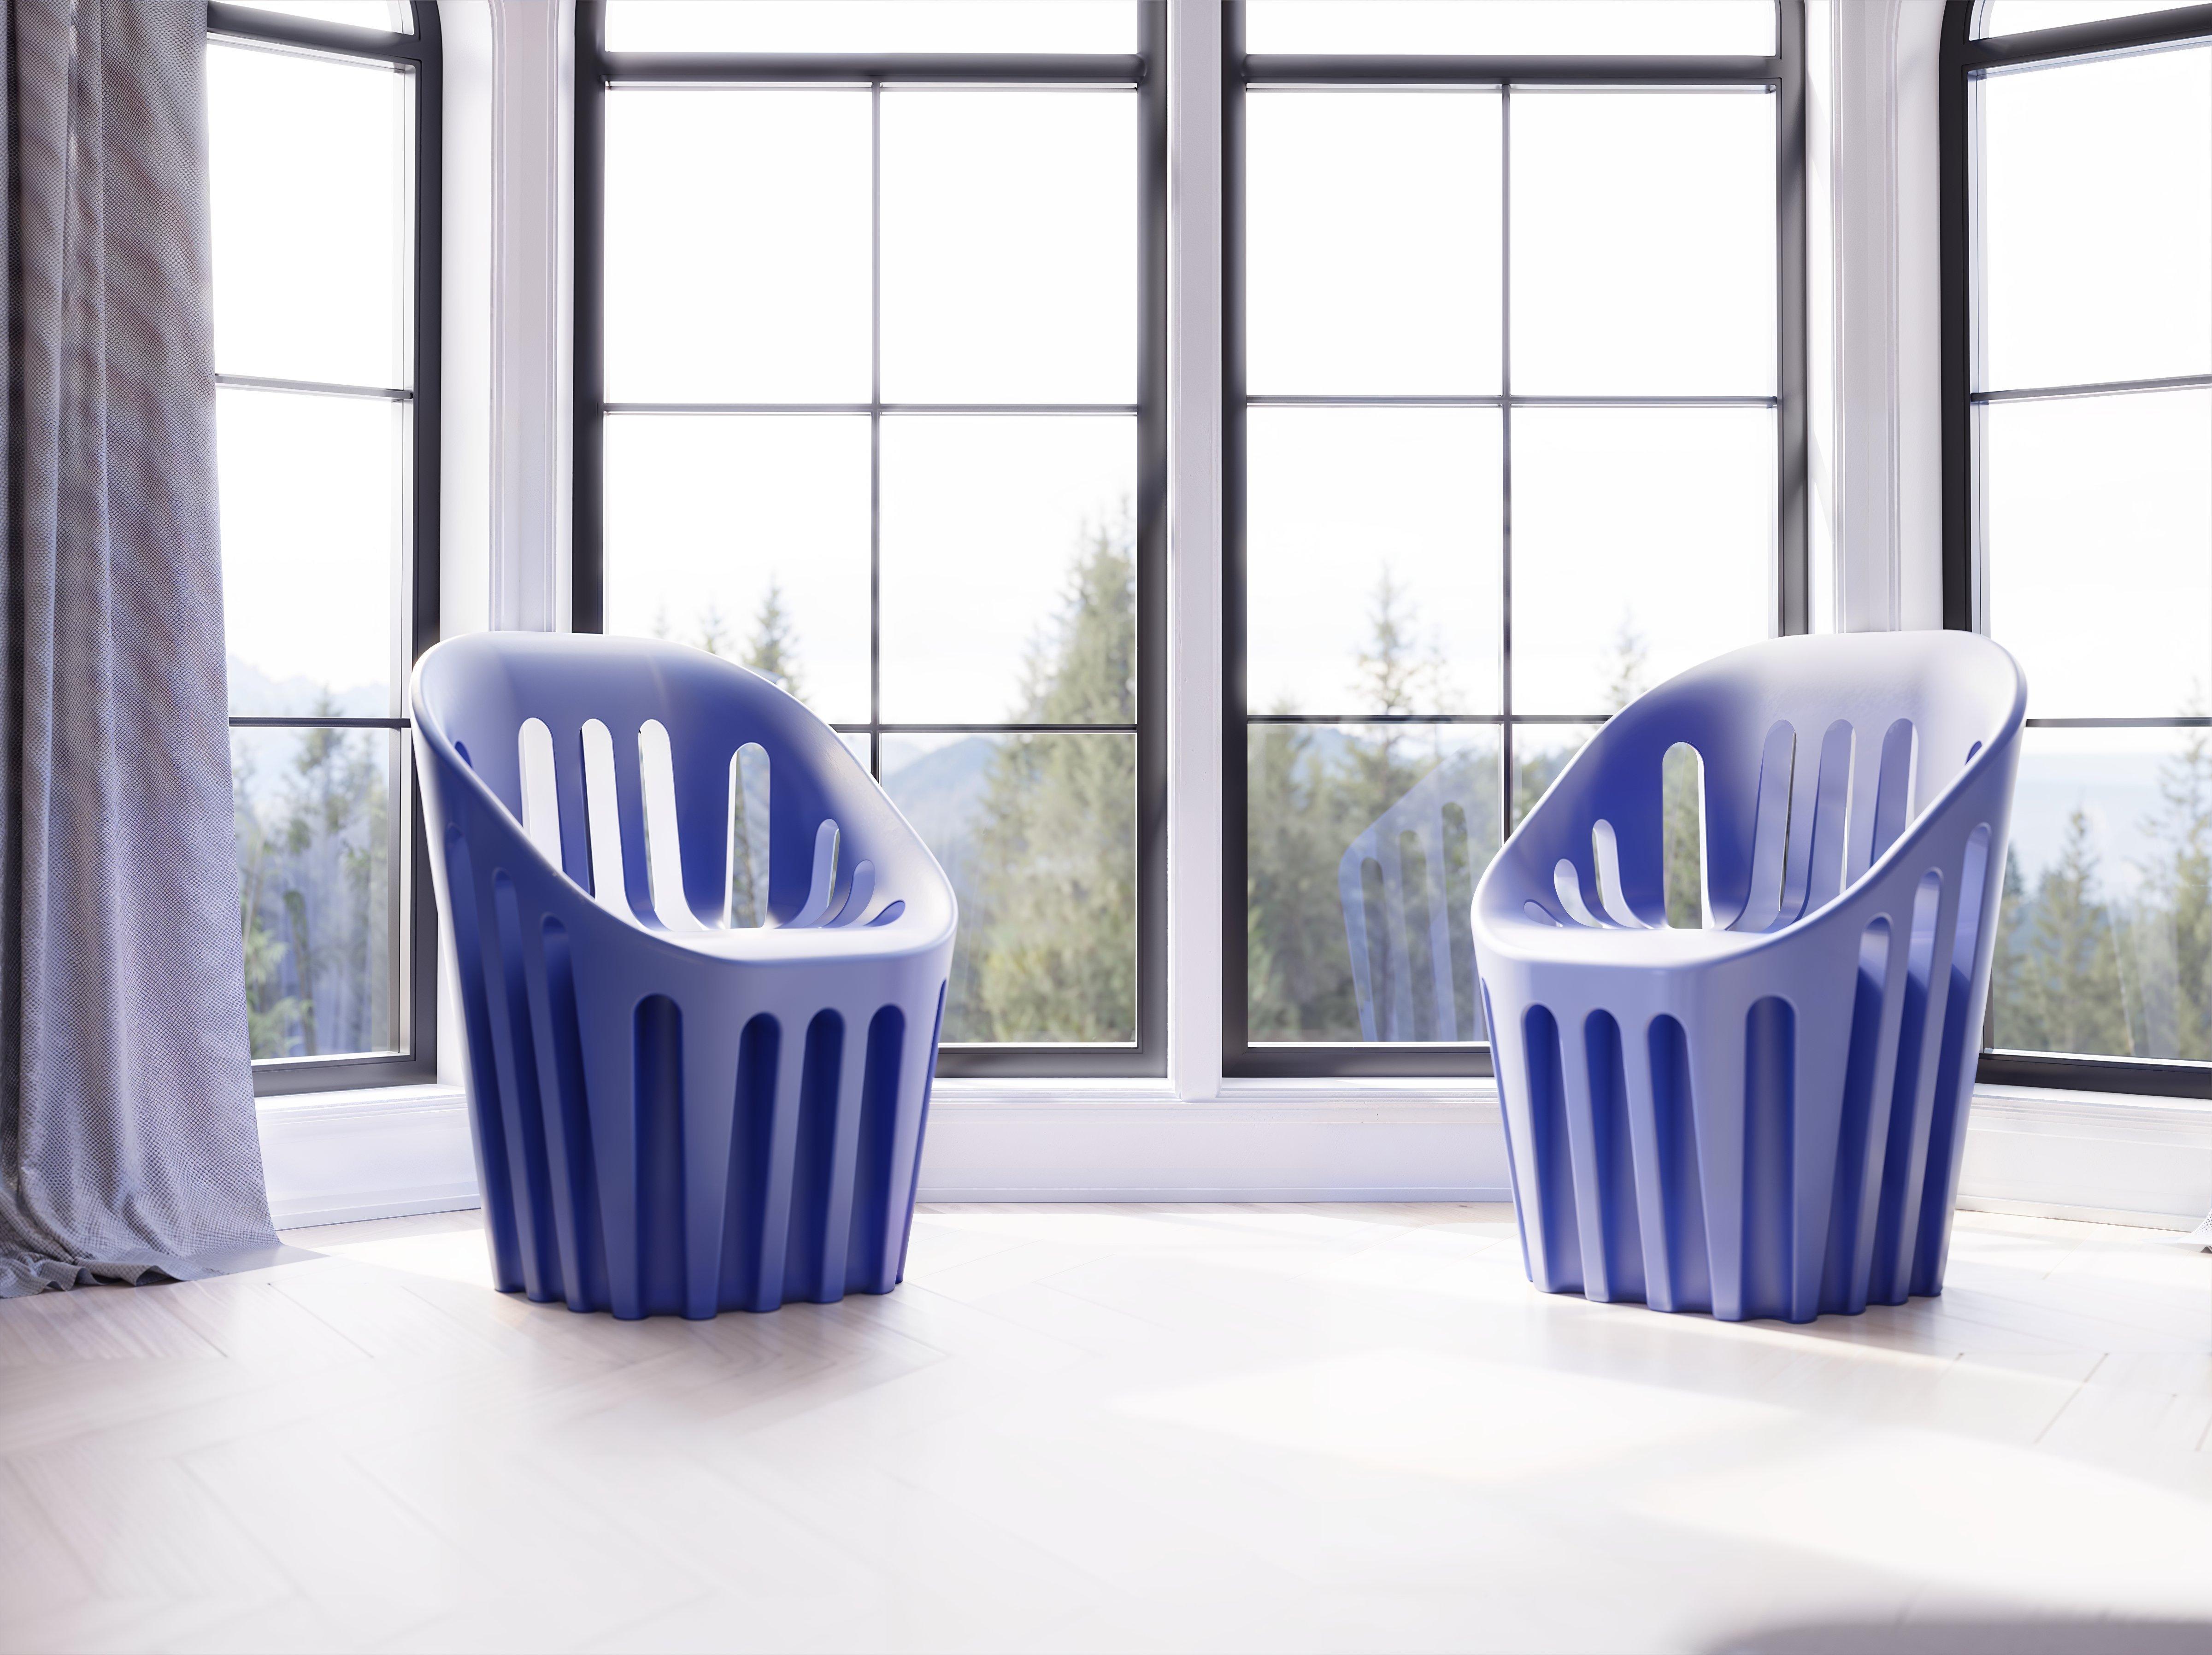 Grüner Coliseum-Stuhl aus Malva von Alvaro Uribe
Abmessungen: T 65 x B 66 x H 86 cm. Sitzhöhe: 45 cm.
MATERIALEN: Polyethylen.
Gewicht: 11 kg.

Erhältlich in verschiedenen Farbvarianten. Dieses Produkt ist für die Verwendung im Innen- und